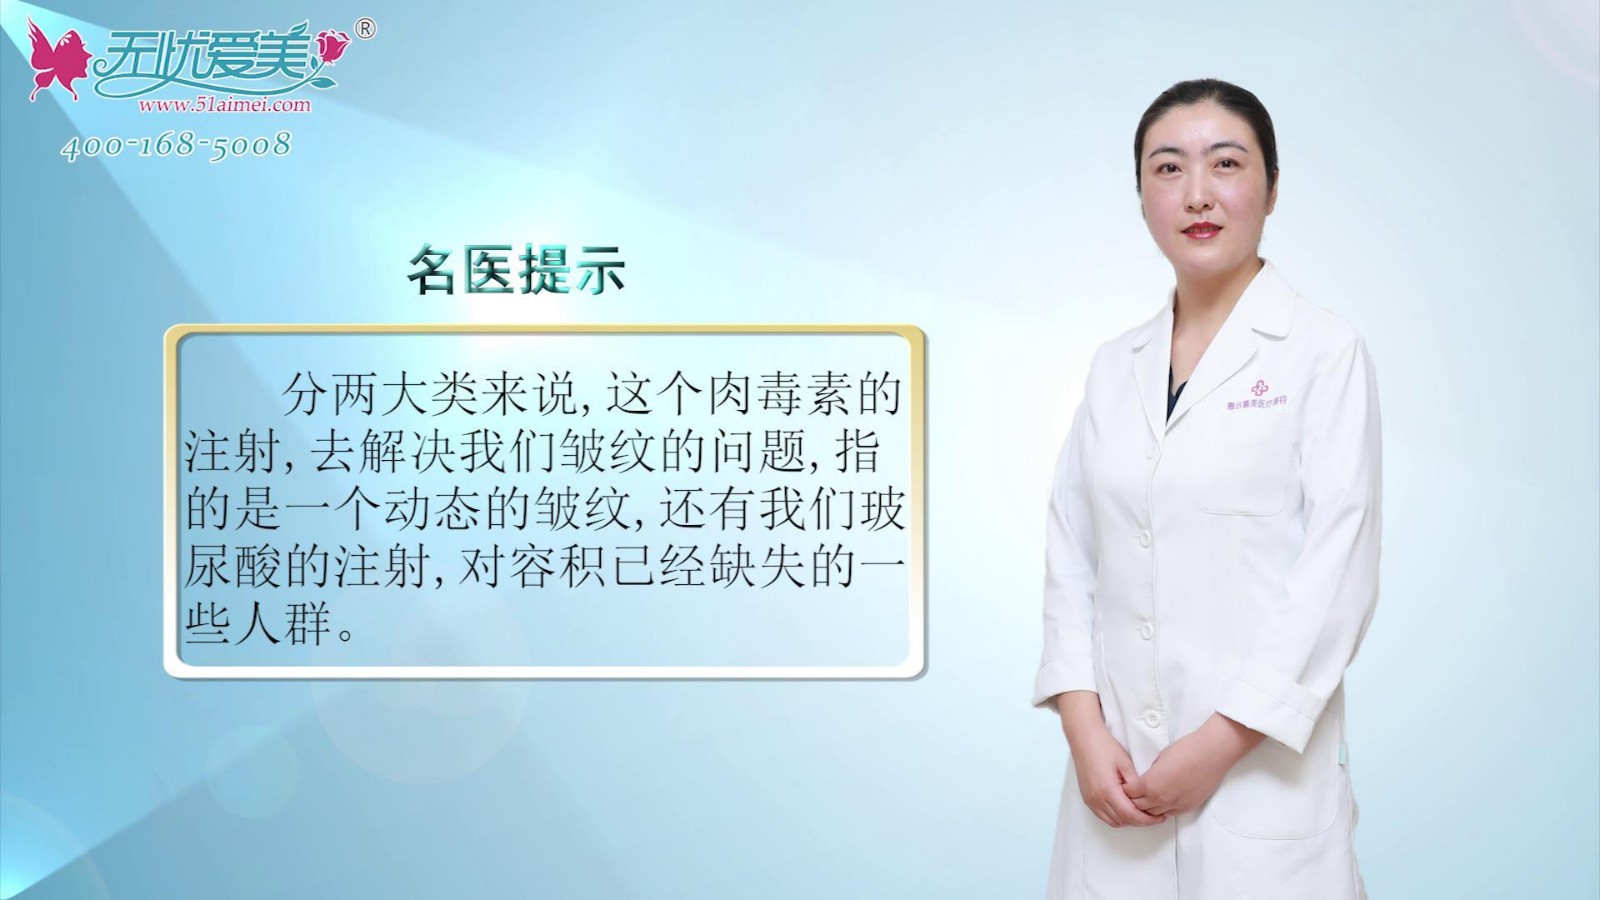 视频:北京惠合嘉美刘蕊医生谈无创整形科适合解决哪些问题